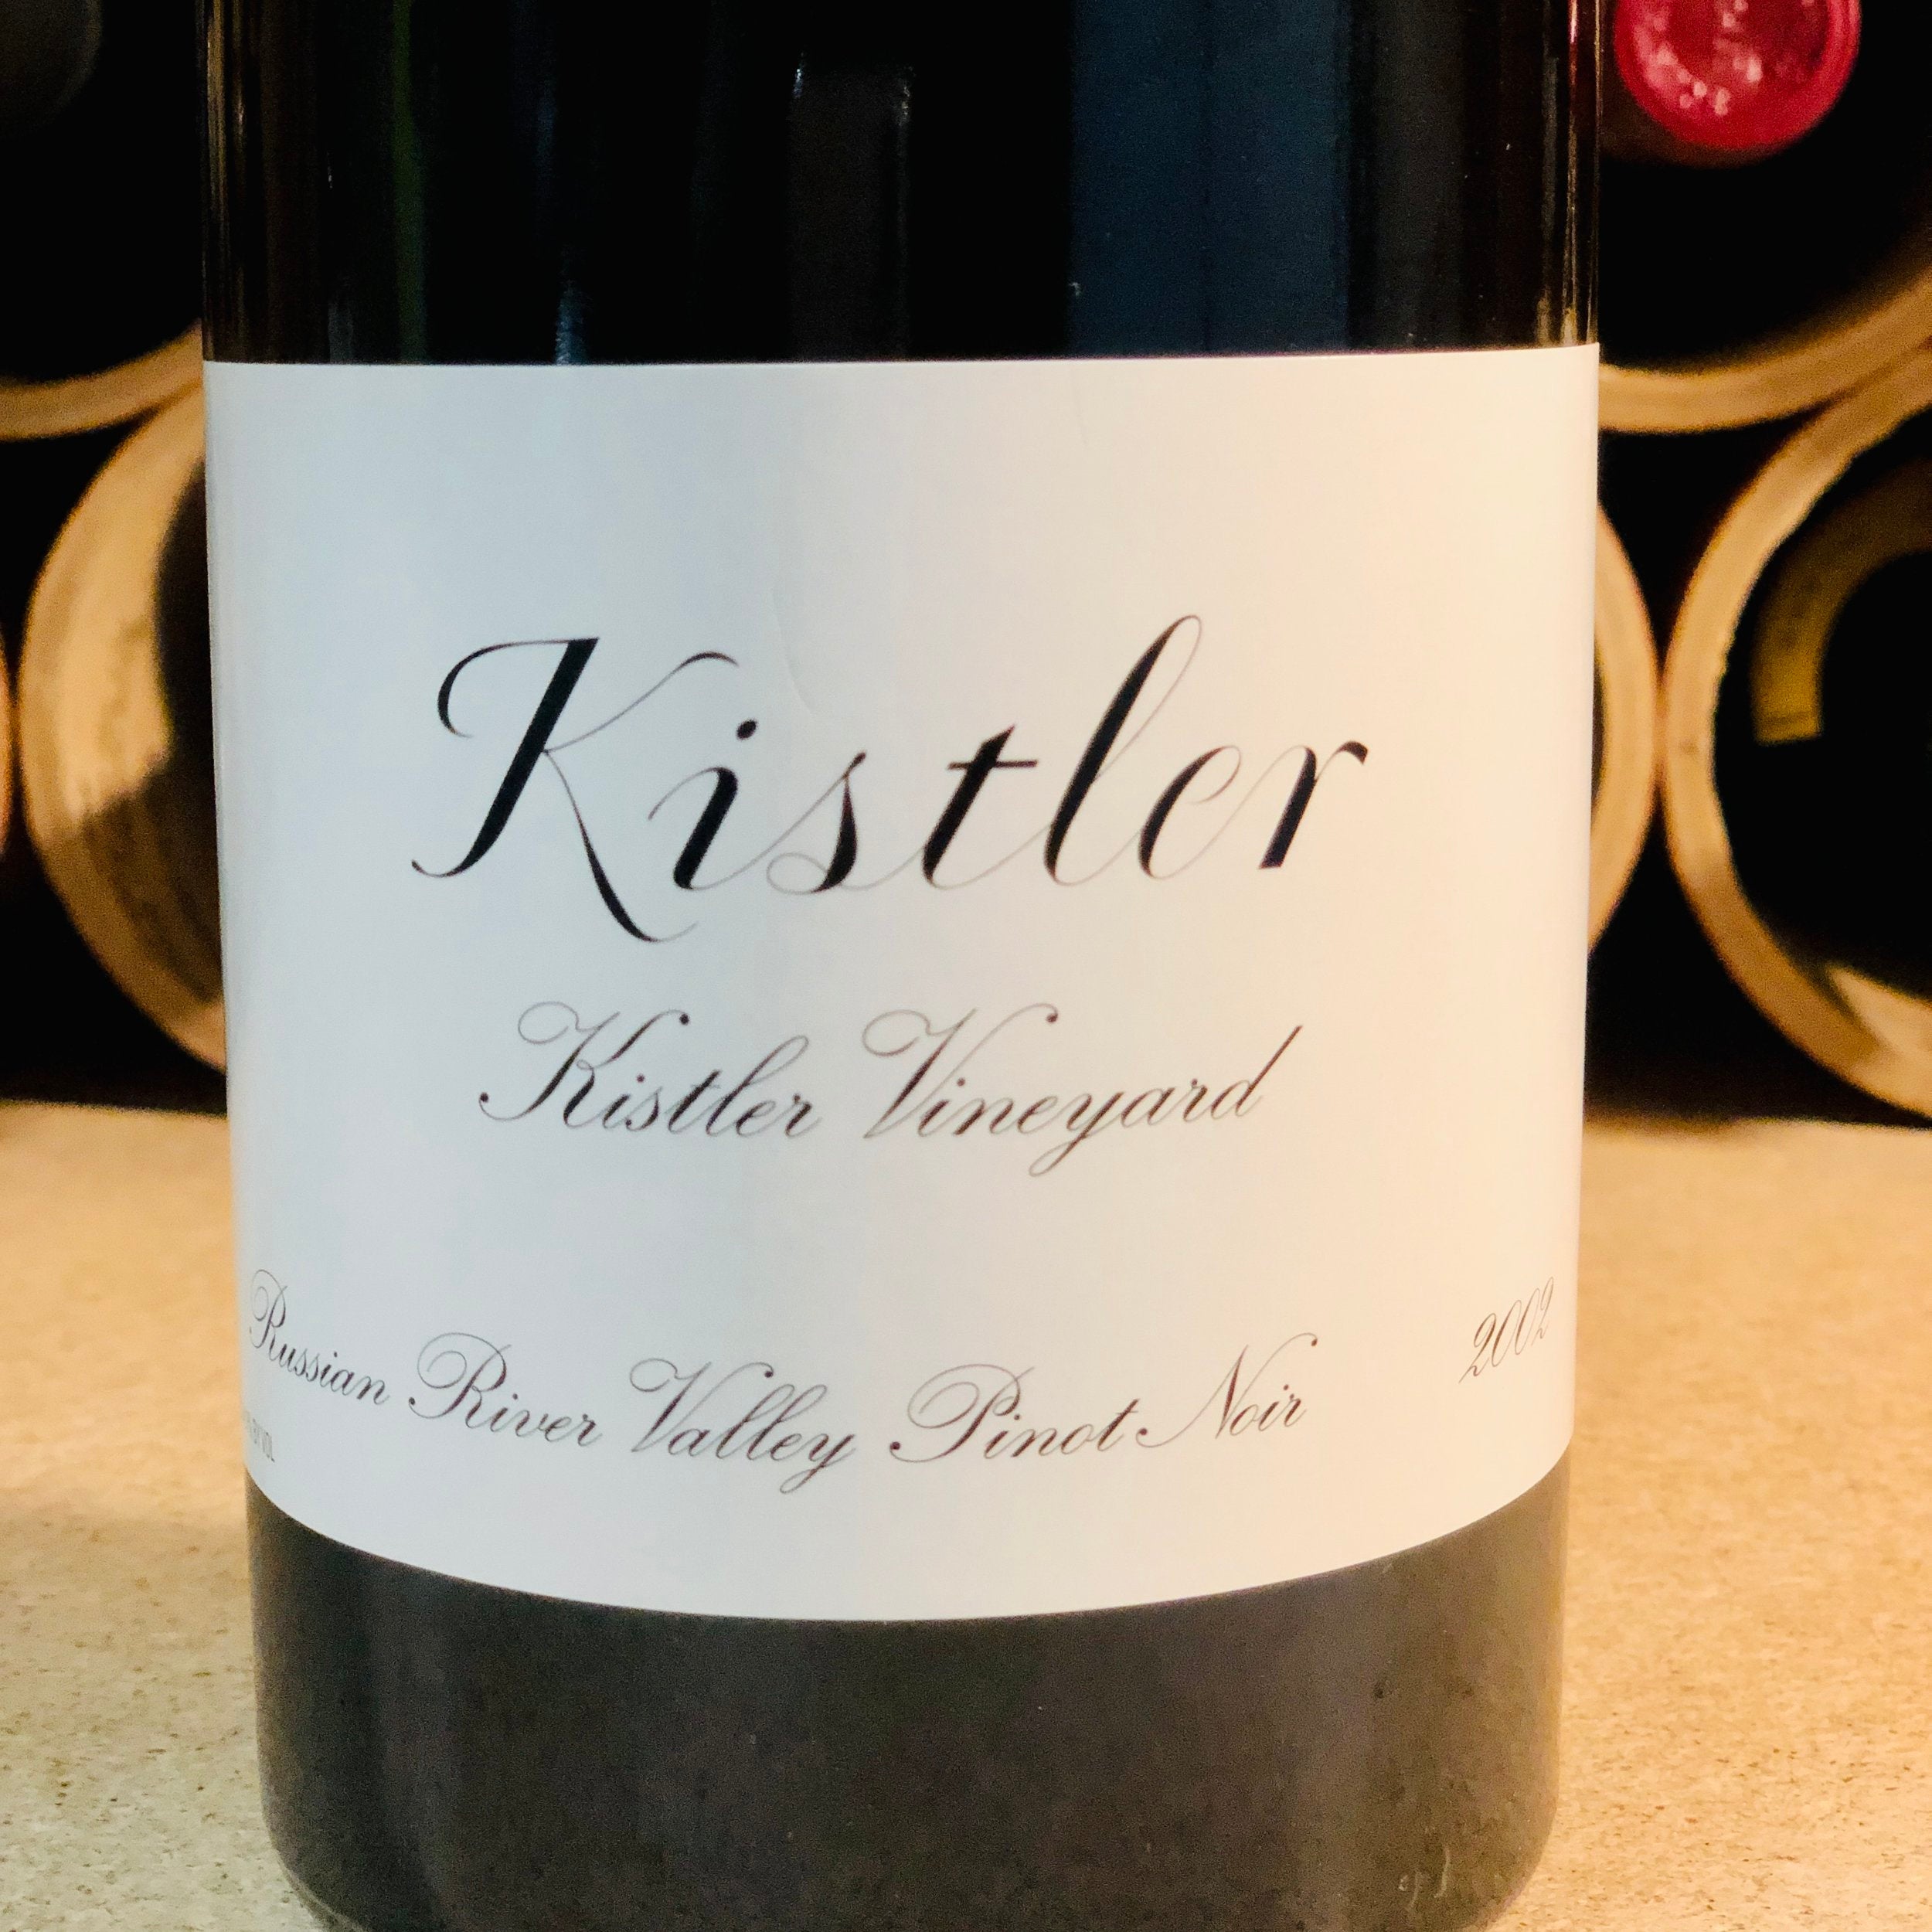 Kistler, Kistler Vineyard, Pinot Noir 2002